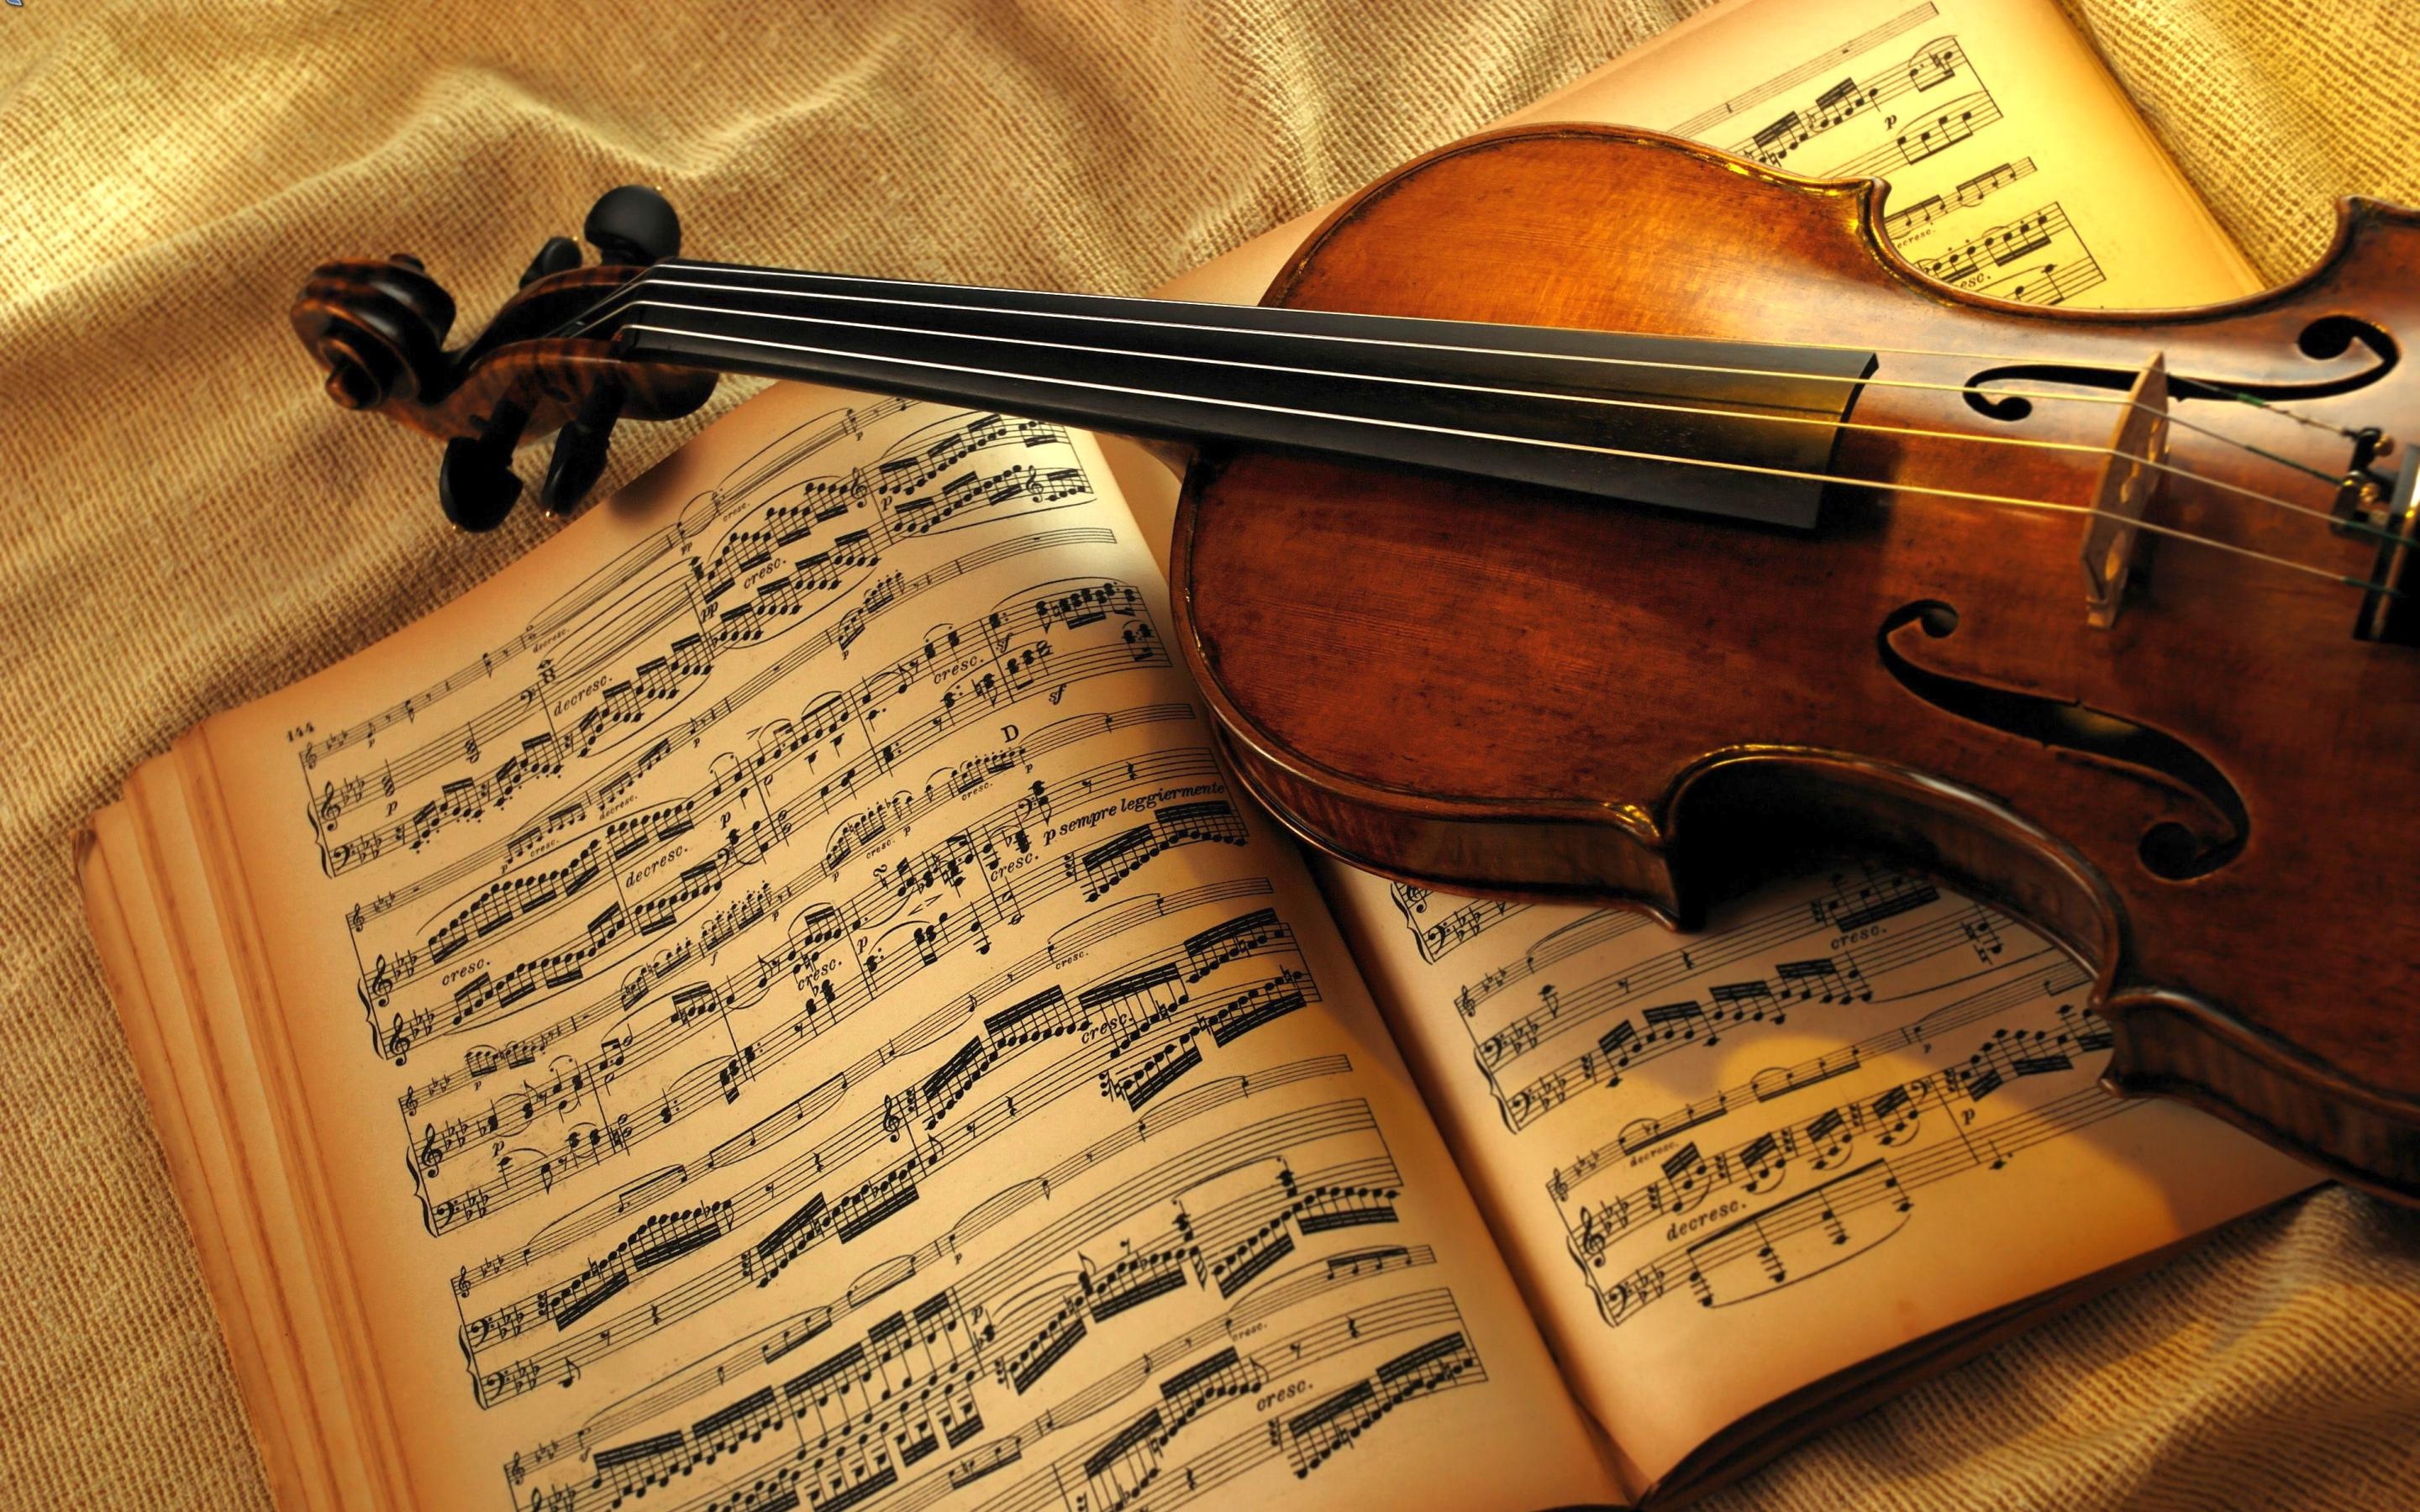 小提琴古典音乐壁纸1600x900分辨率查看